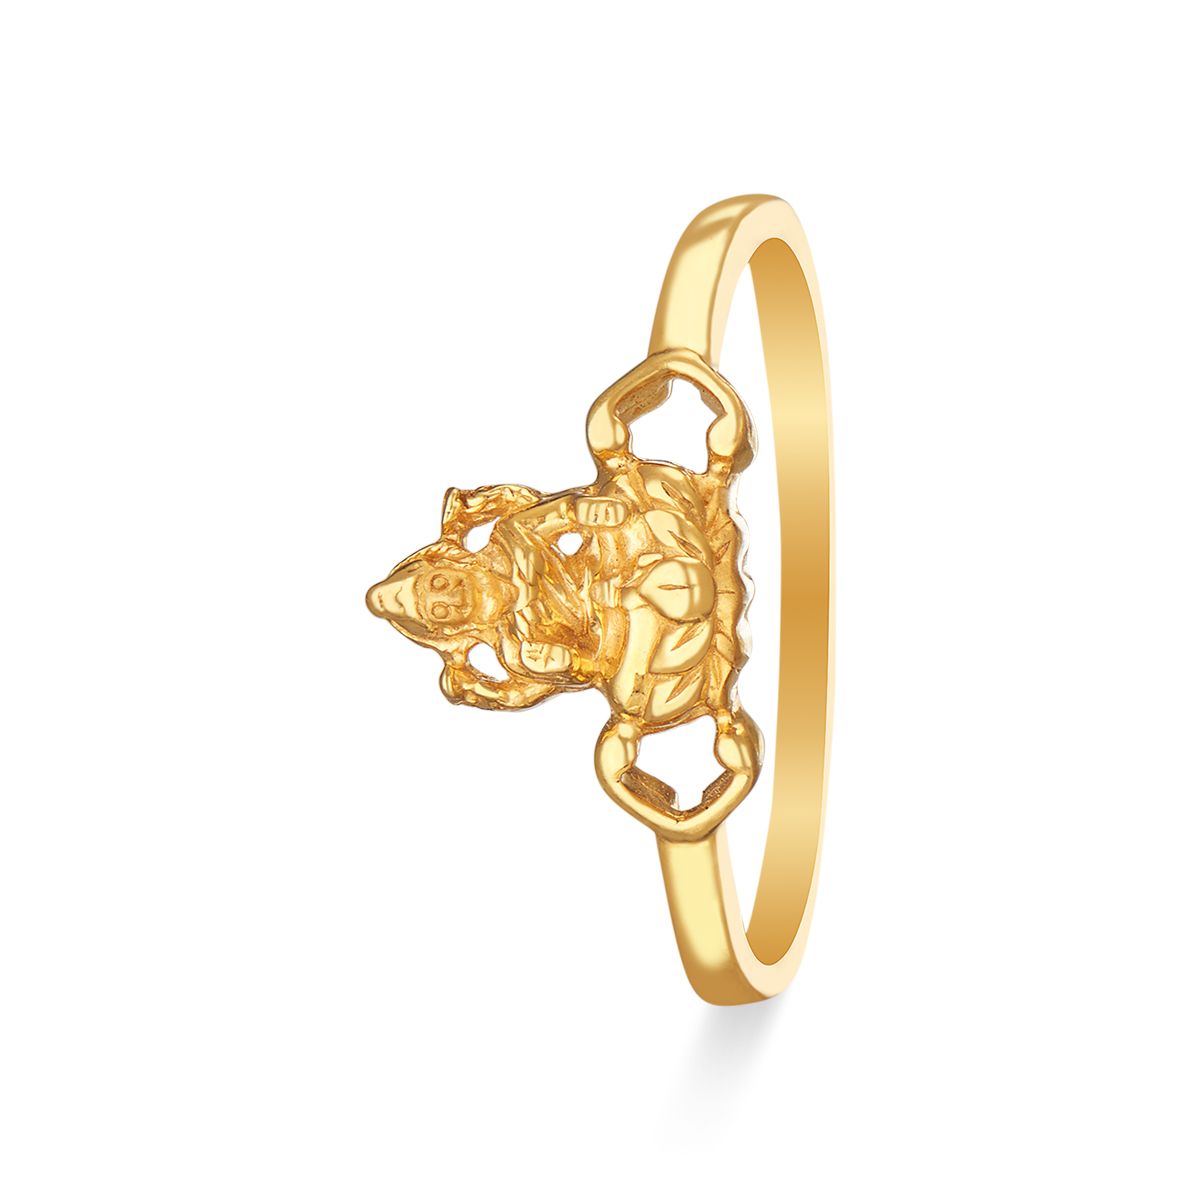 Buy Goddess Lakshmi Gold Ring |GRT Jewellers